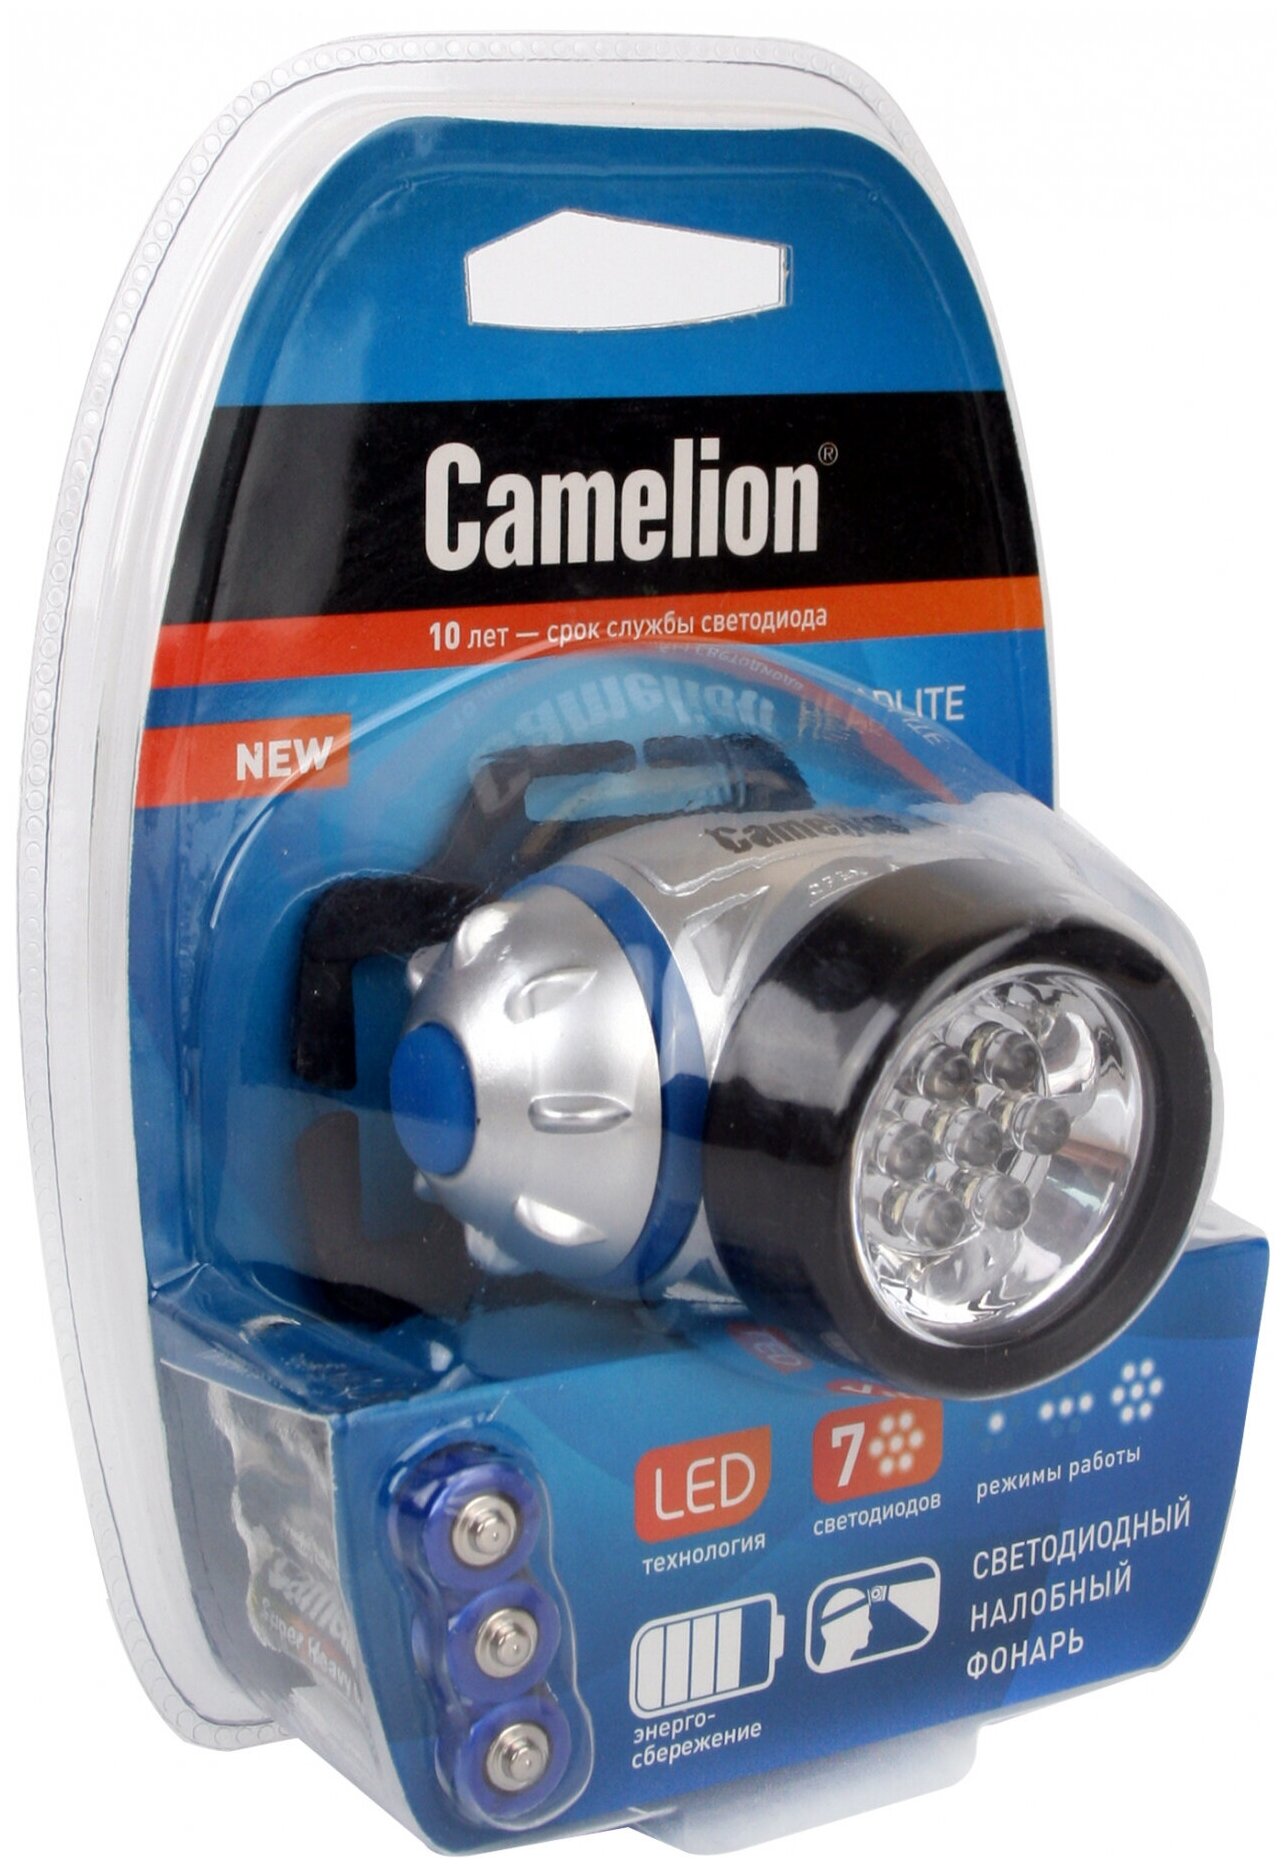 Налобный фонарь Camelion - фото №7